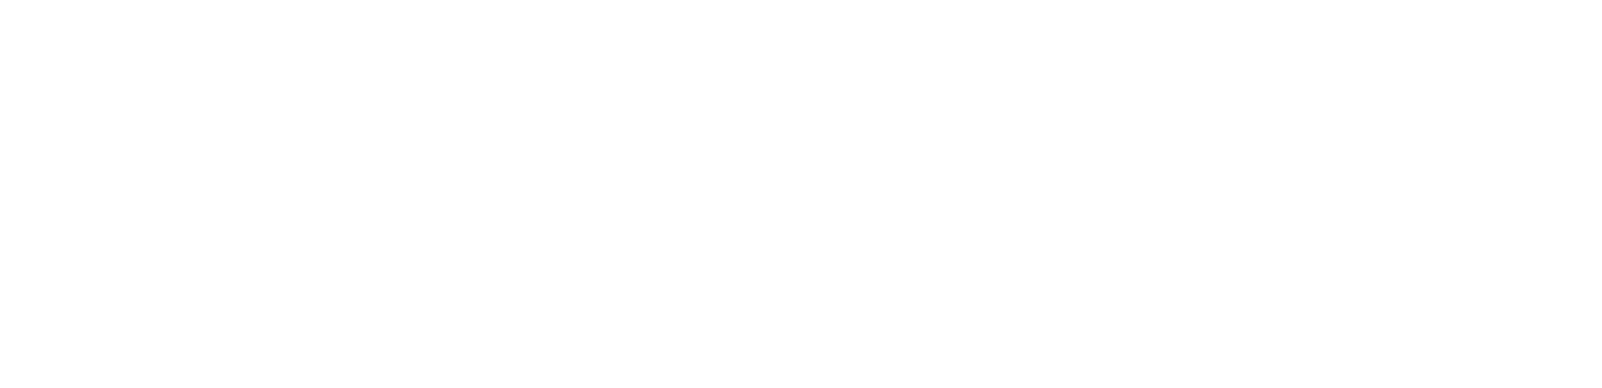 NIBE Industrier logo grand pour les fonds sombres (PNG transparent)